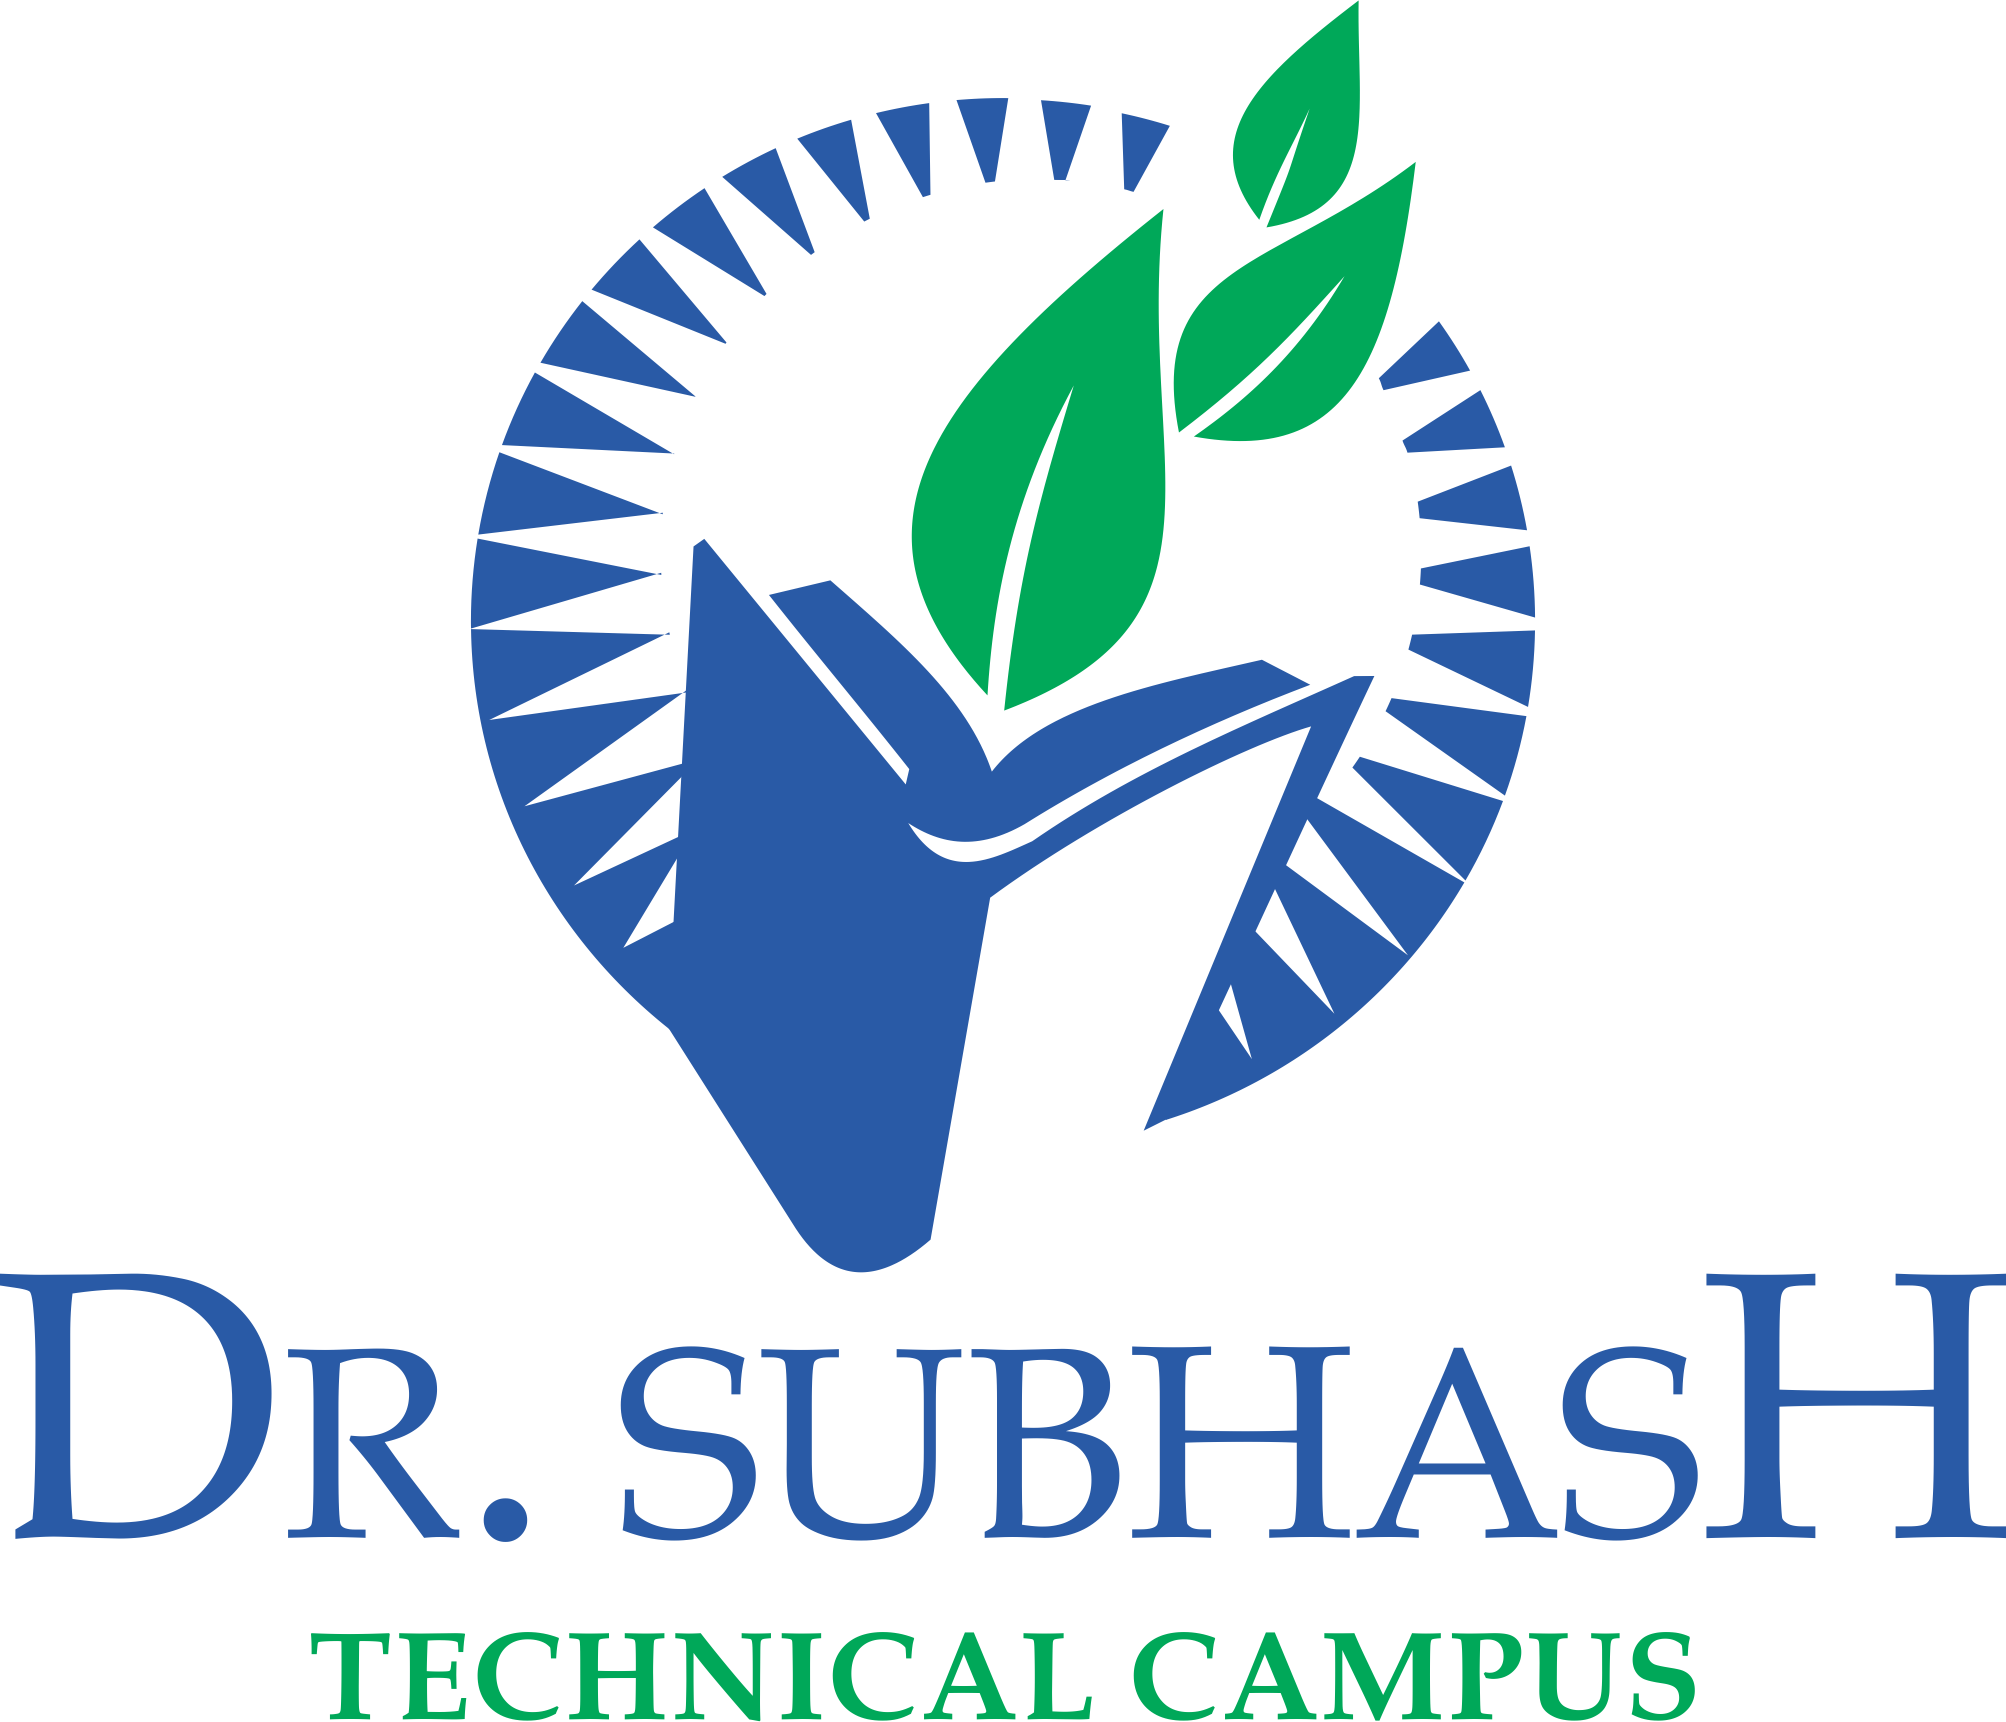 DR. SUBHASH TECHNICAL CAMPUS